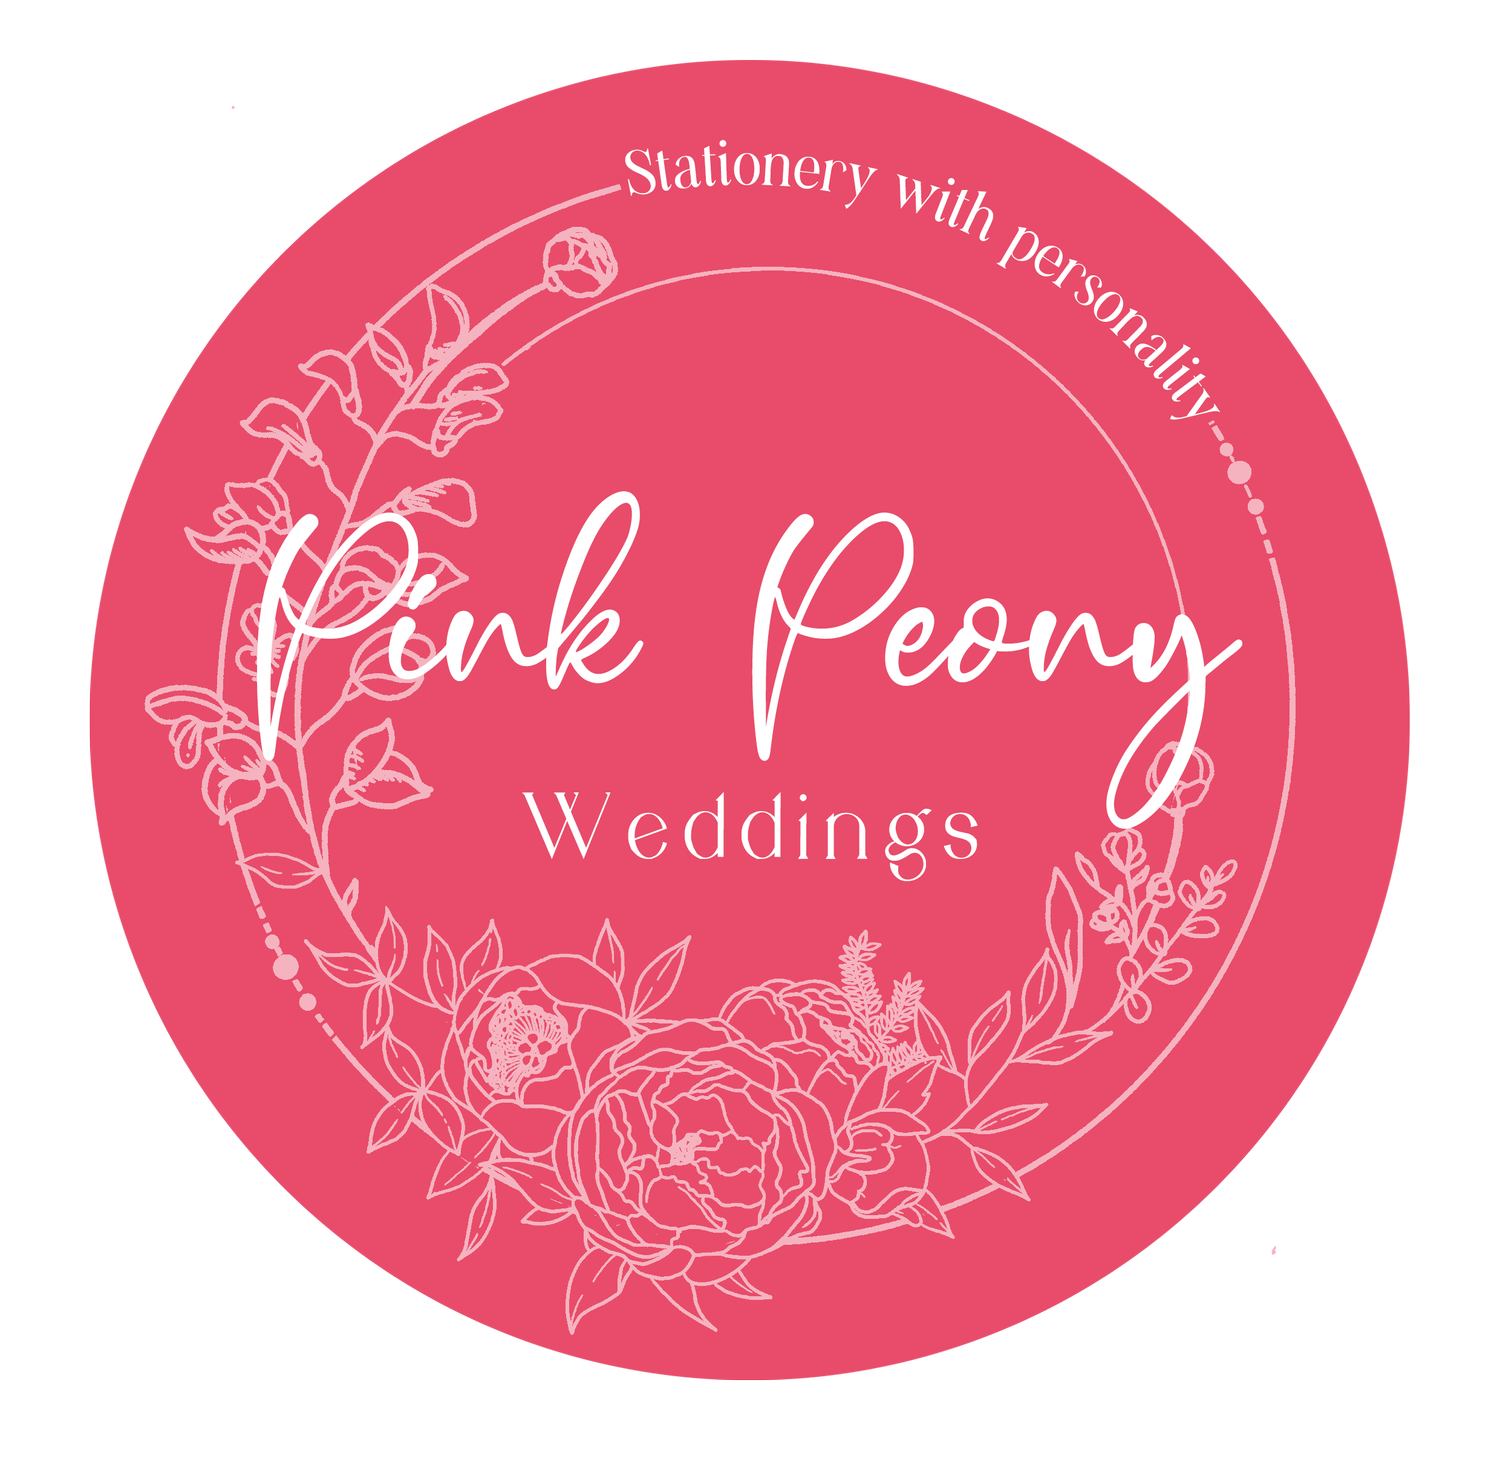 Pink Peony Weddings